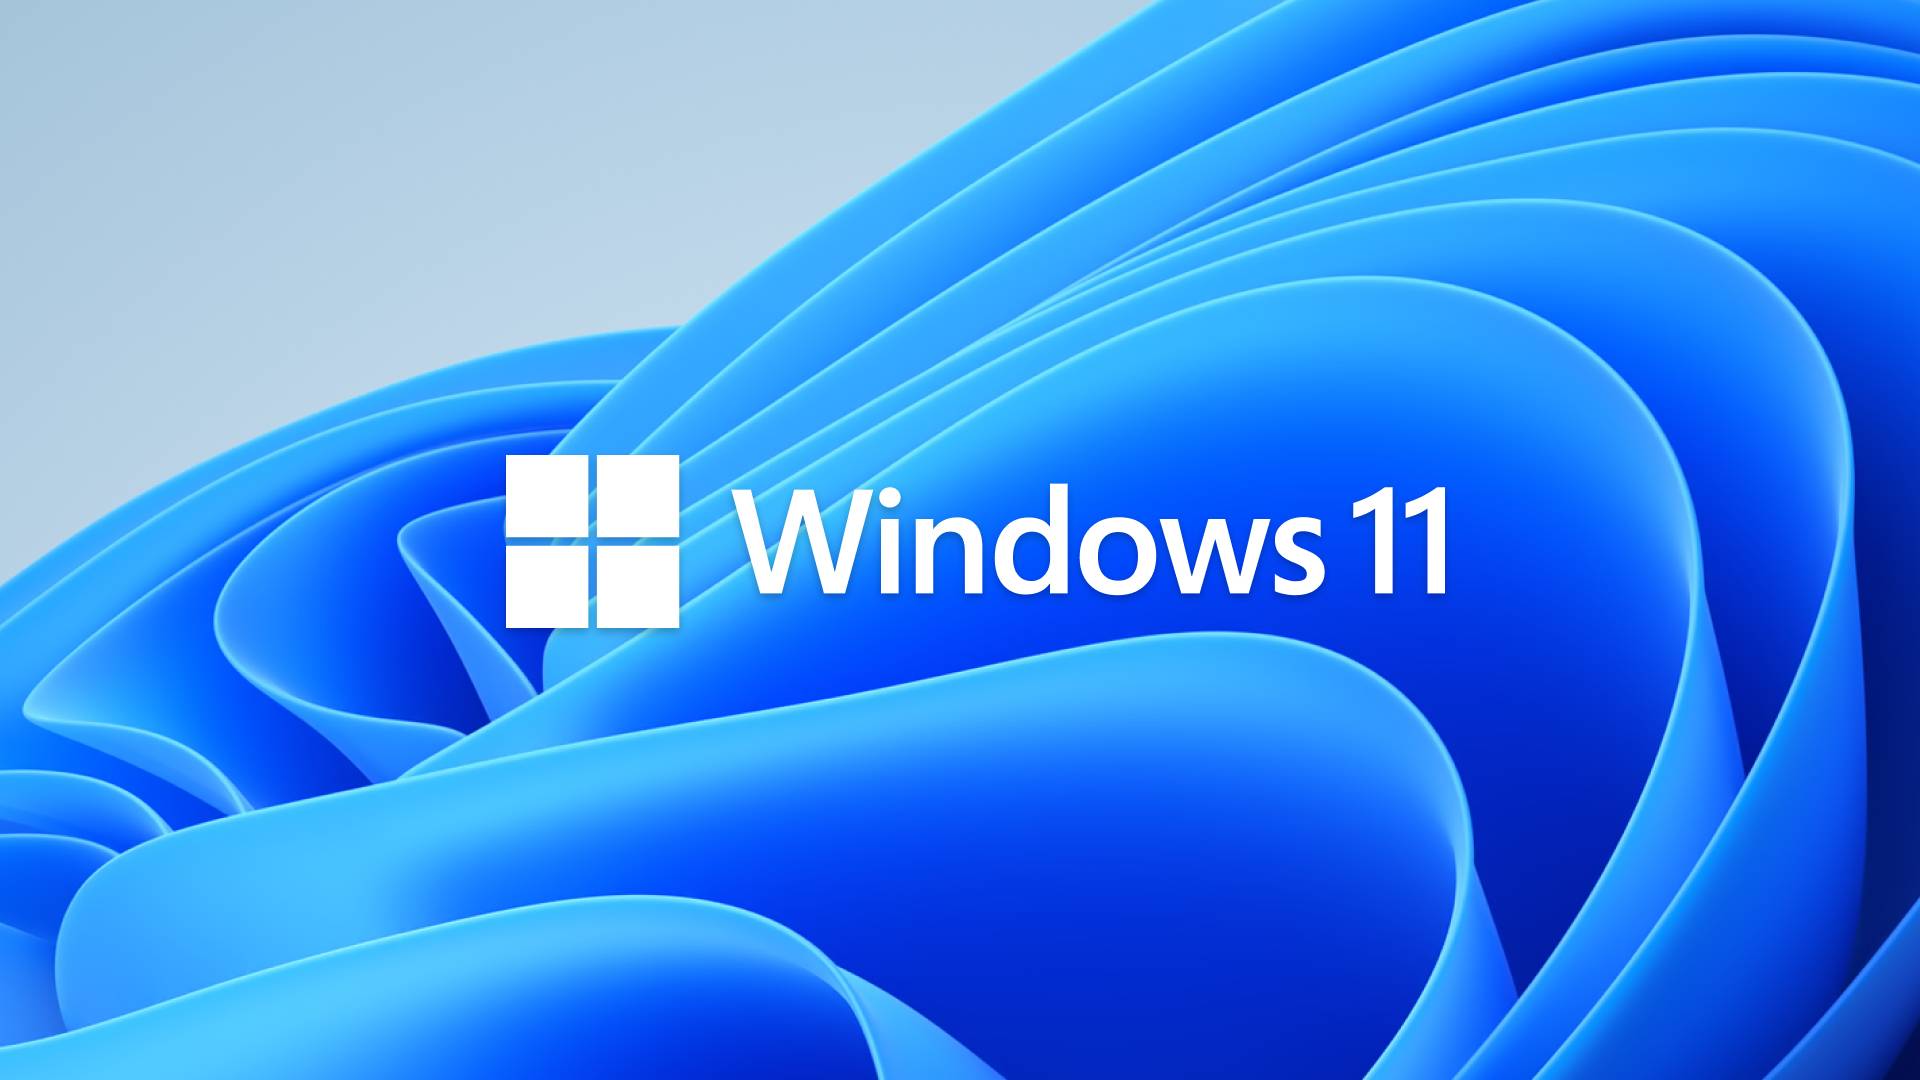 Microsoft actualizare KB5034765 windows 11 probleme